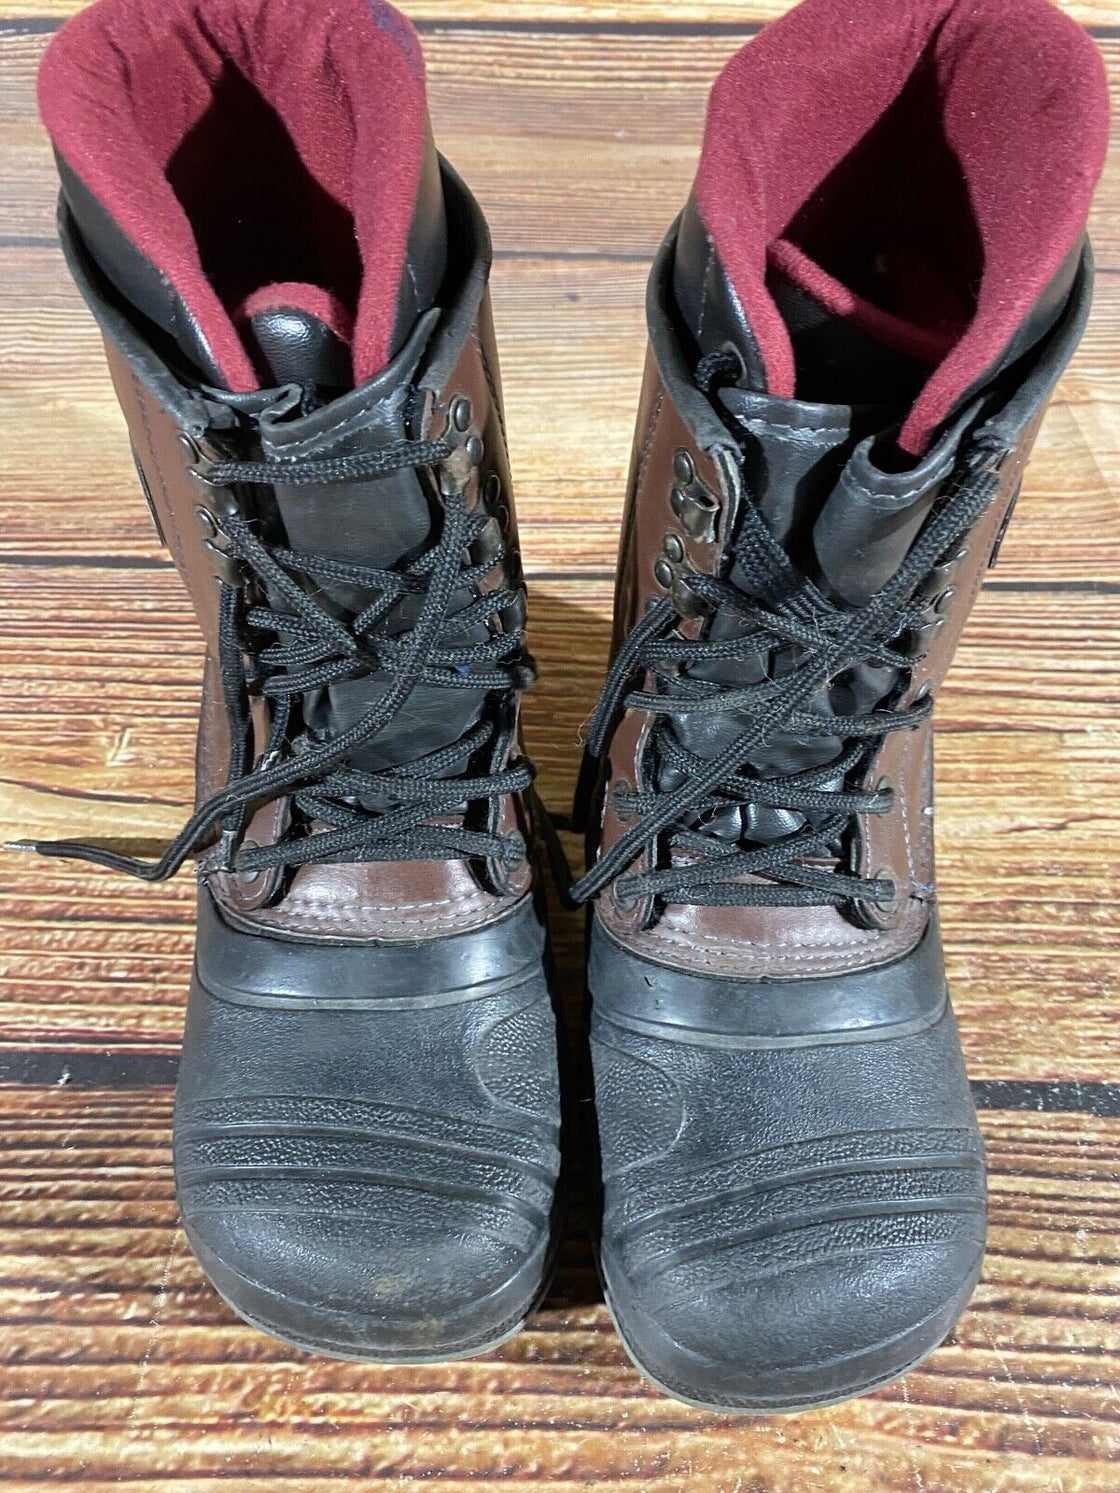 WILD DUCK Vintage Snowboard Boots Size EU40, US7, UK6, Mondo 250 mm G